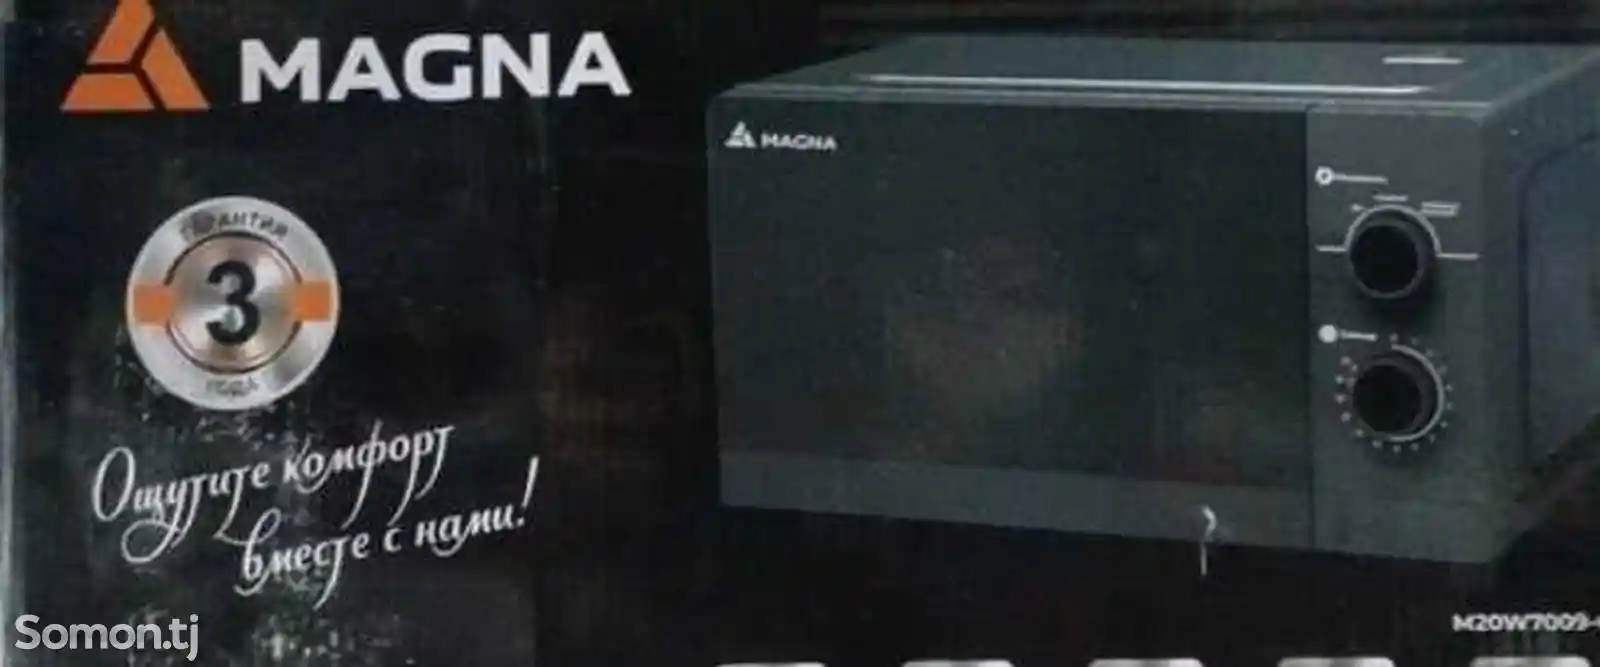 Микроволновая печь Magna